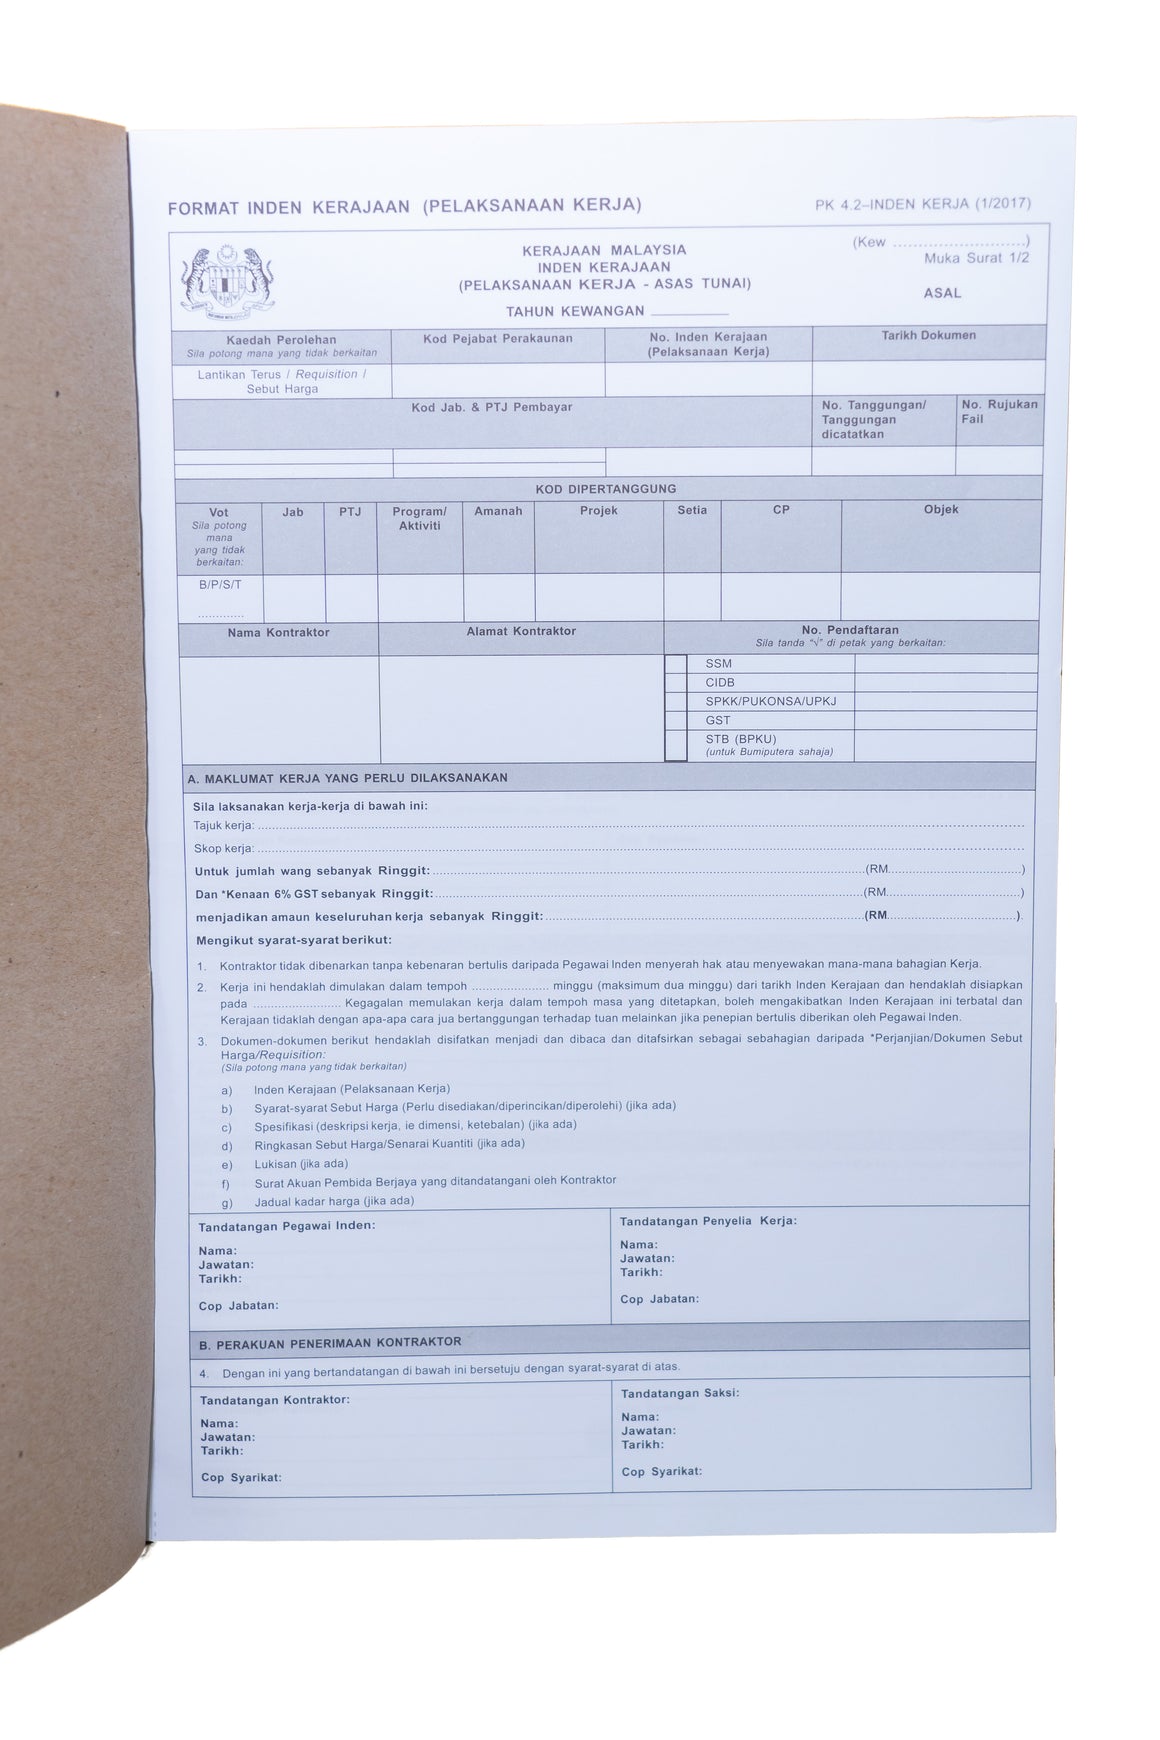 Order On Contractor -Inden Kerja (JKR58/PK4.2)